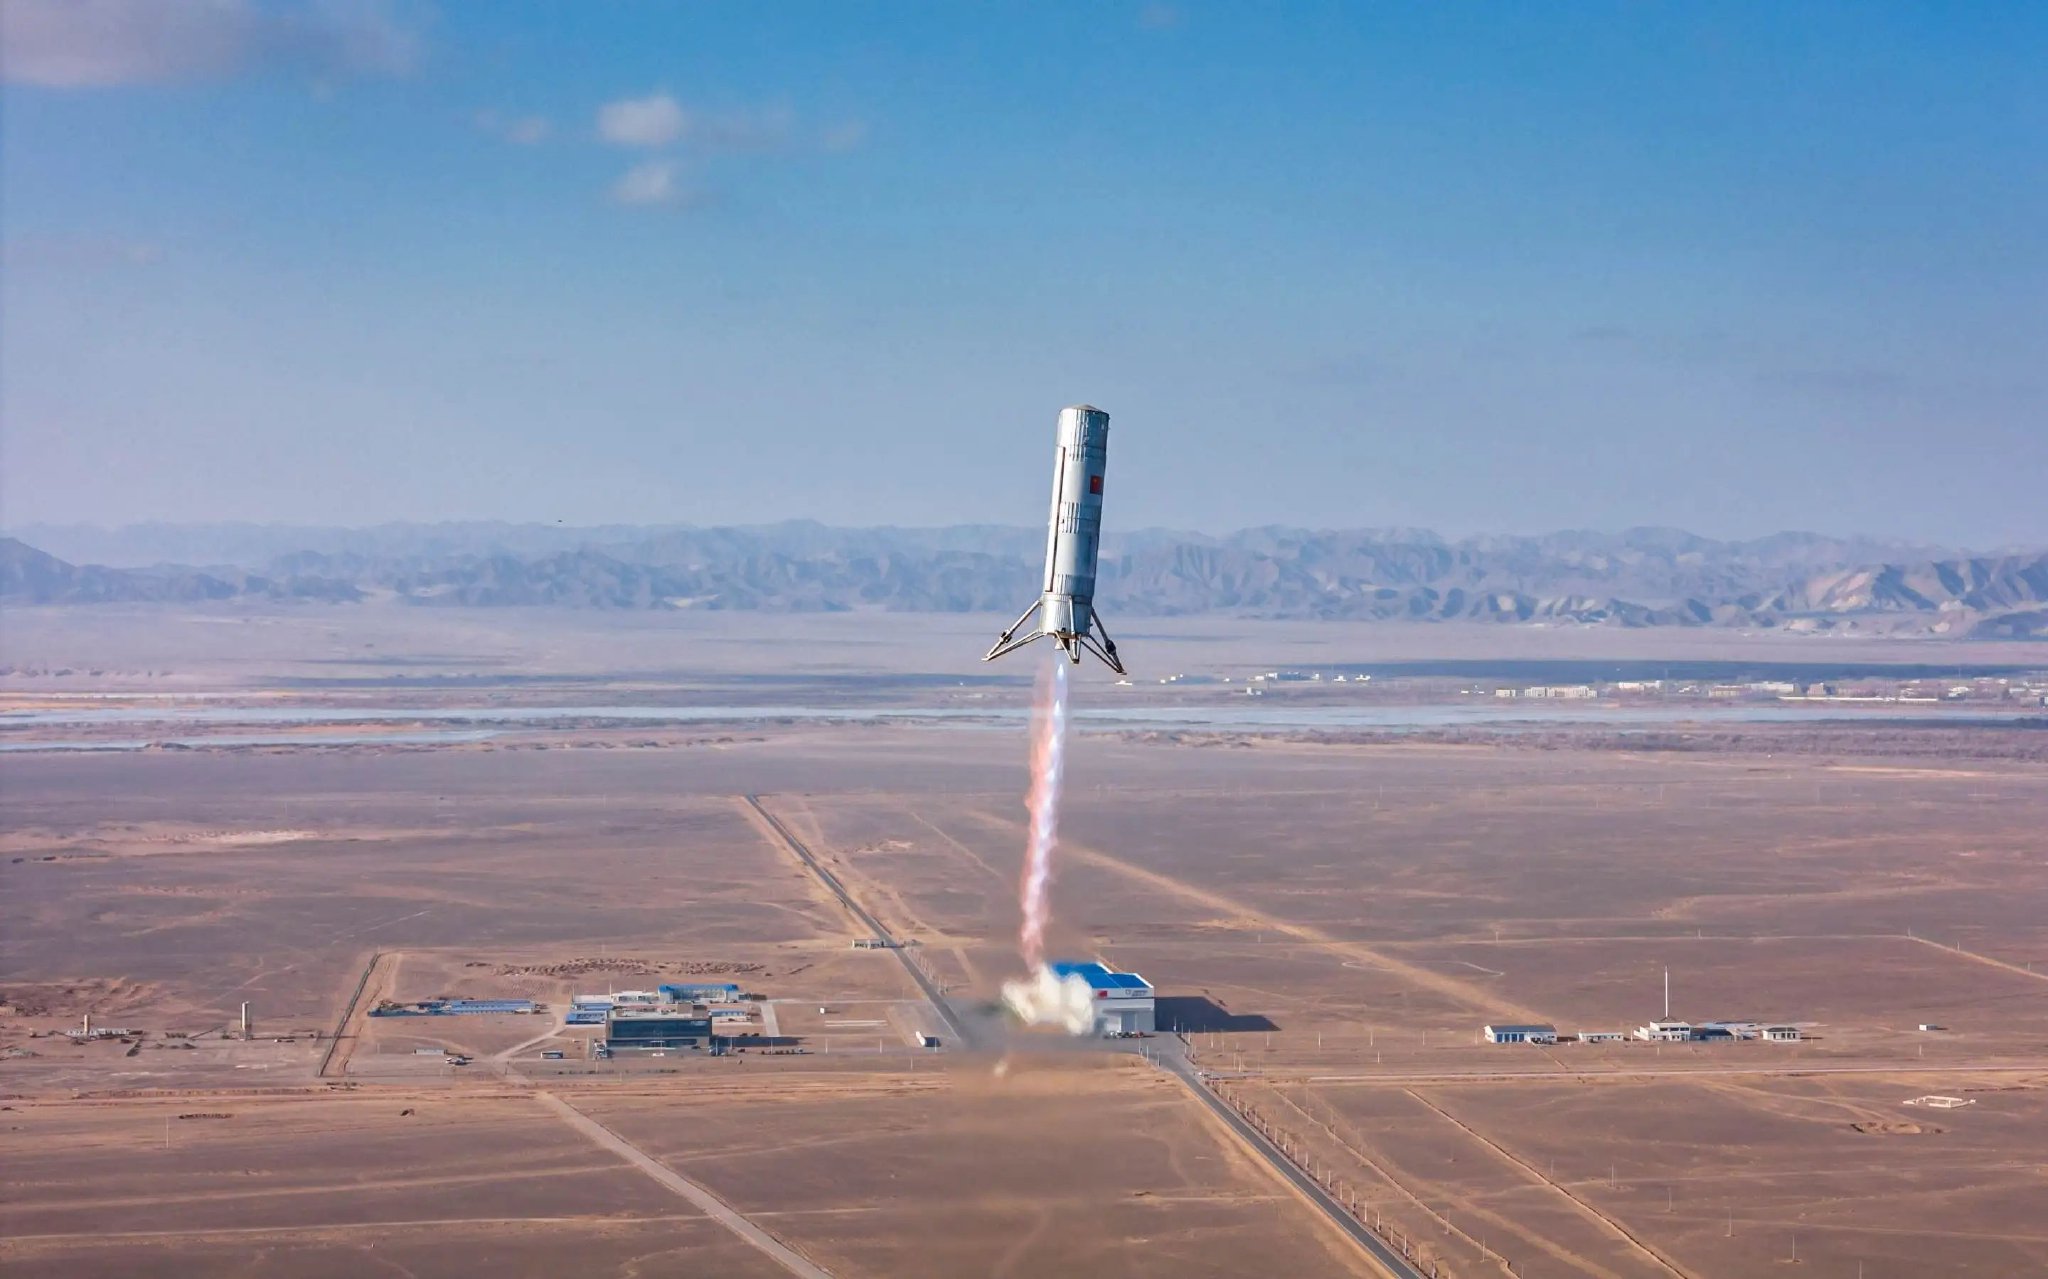 朱雀三号可重复使用垂直起降回收验证火箭在酒泉卫星发射中心圆满完成试验任务。受访单位供图